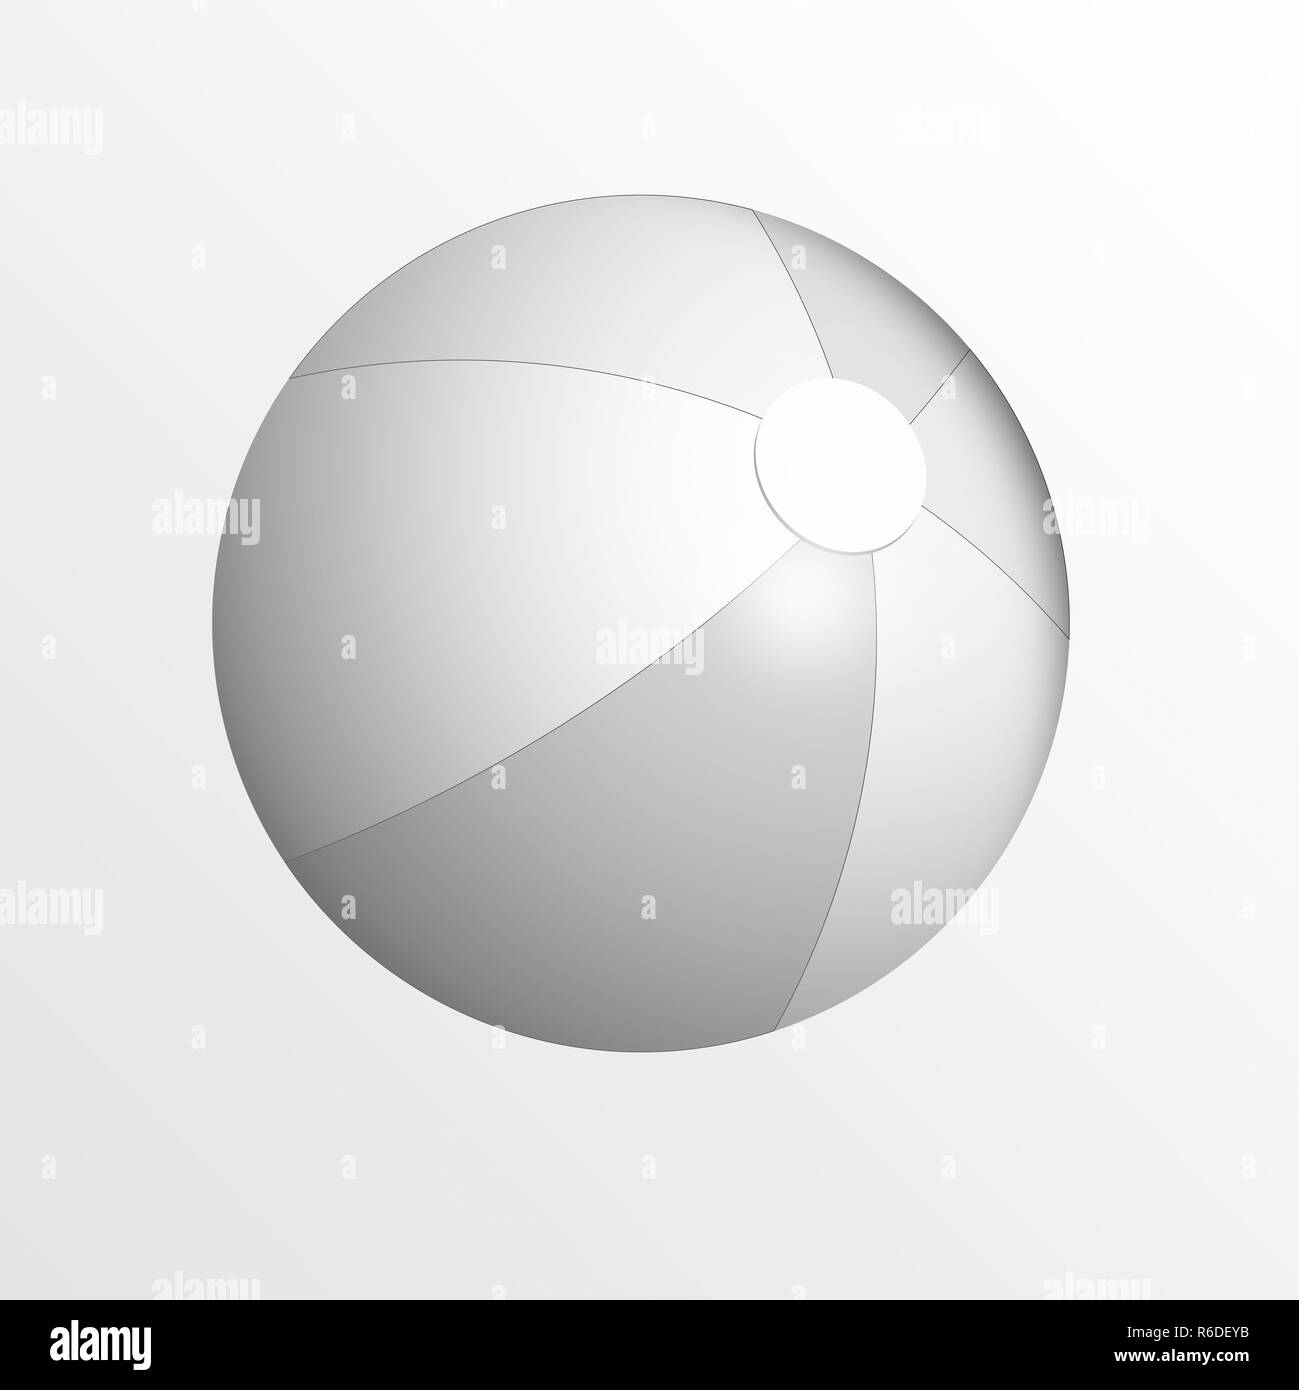 Imagen digital monocroma de pelota de playa, fondo blanco. Foto de stock